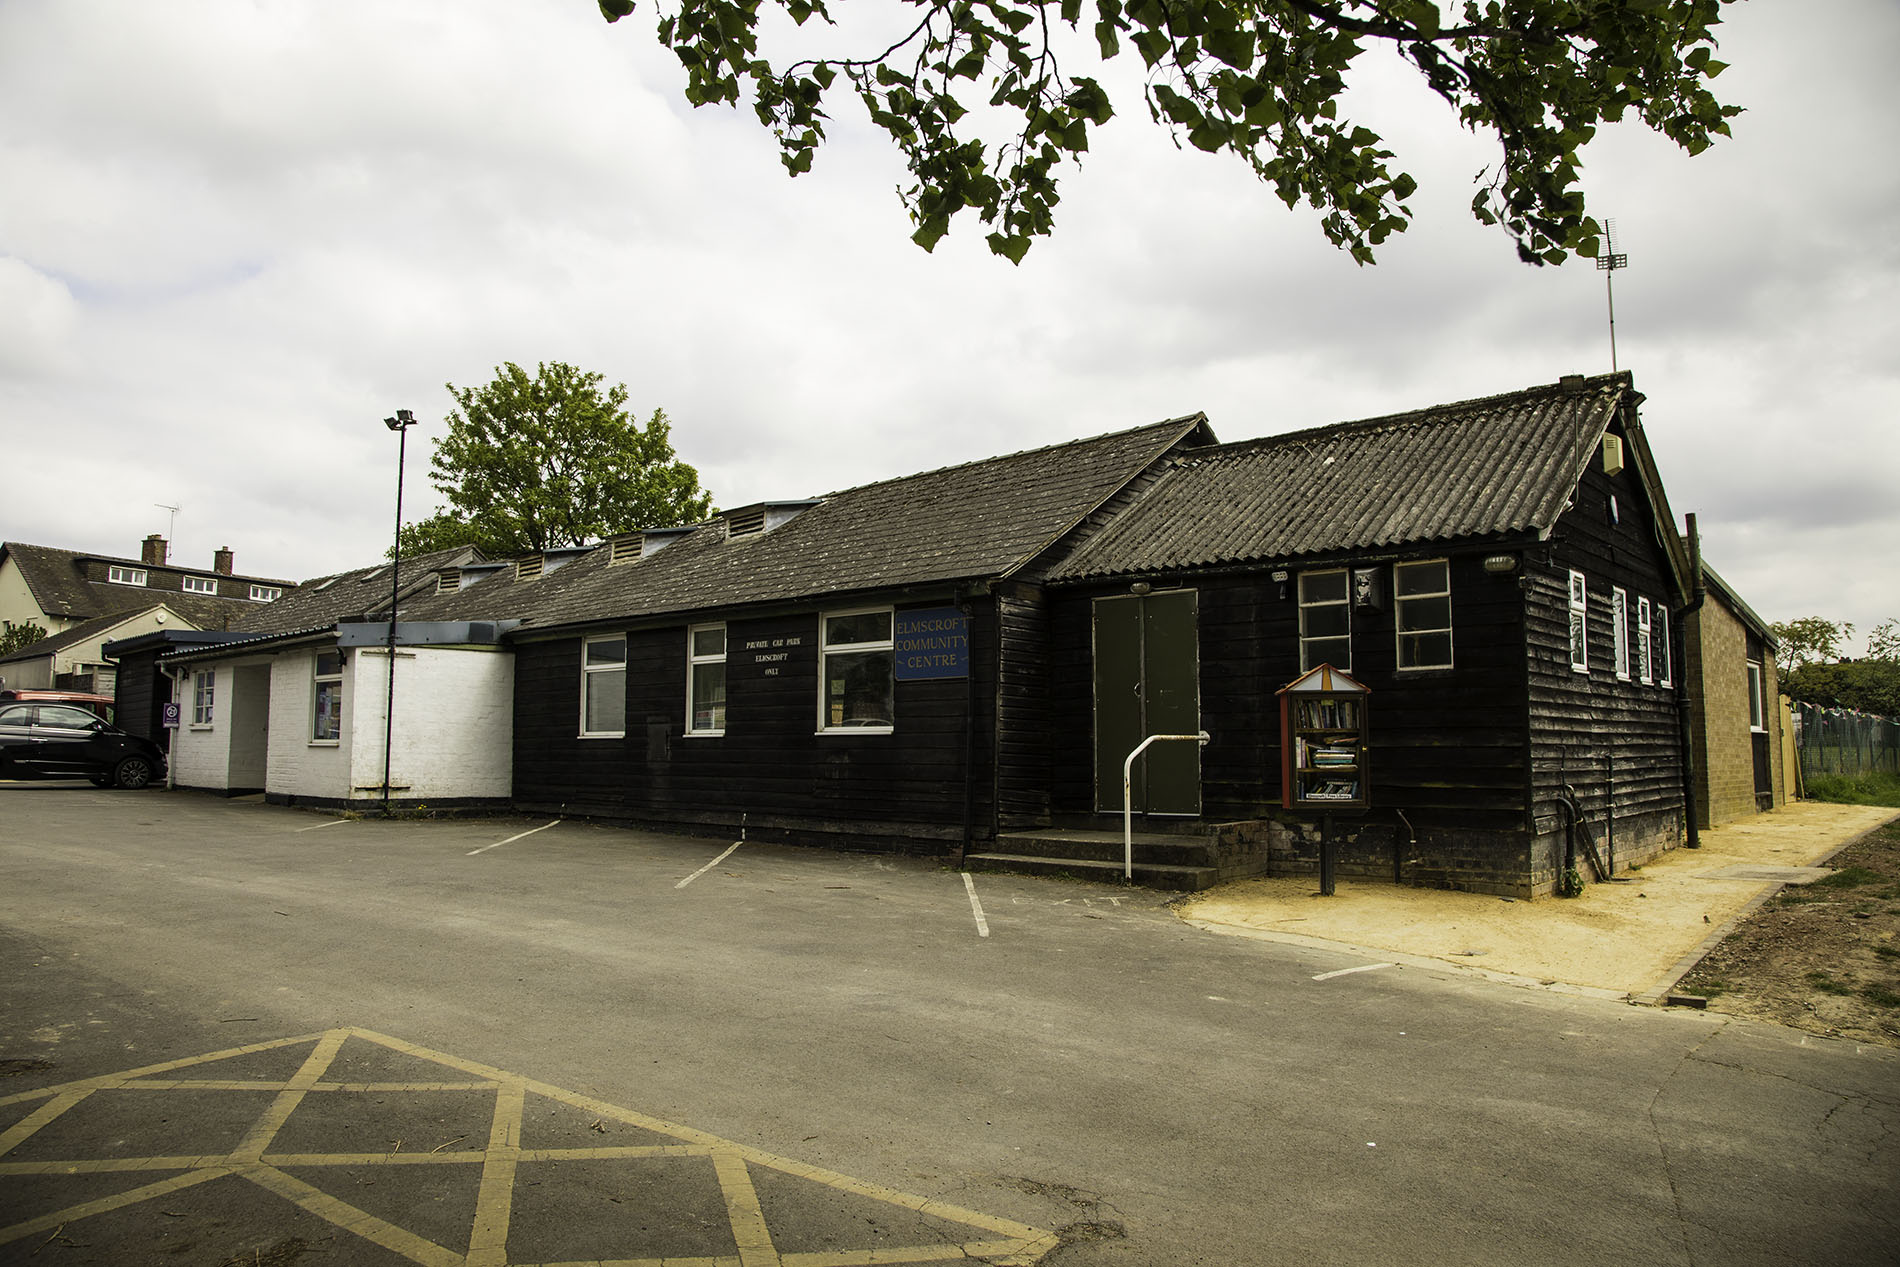 Elmscroft Community Centre